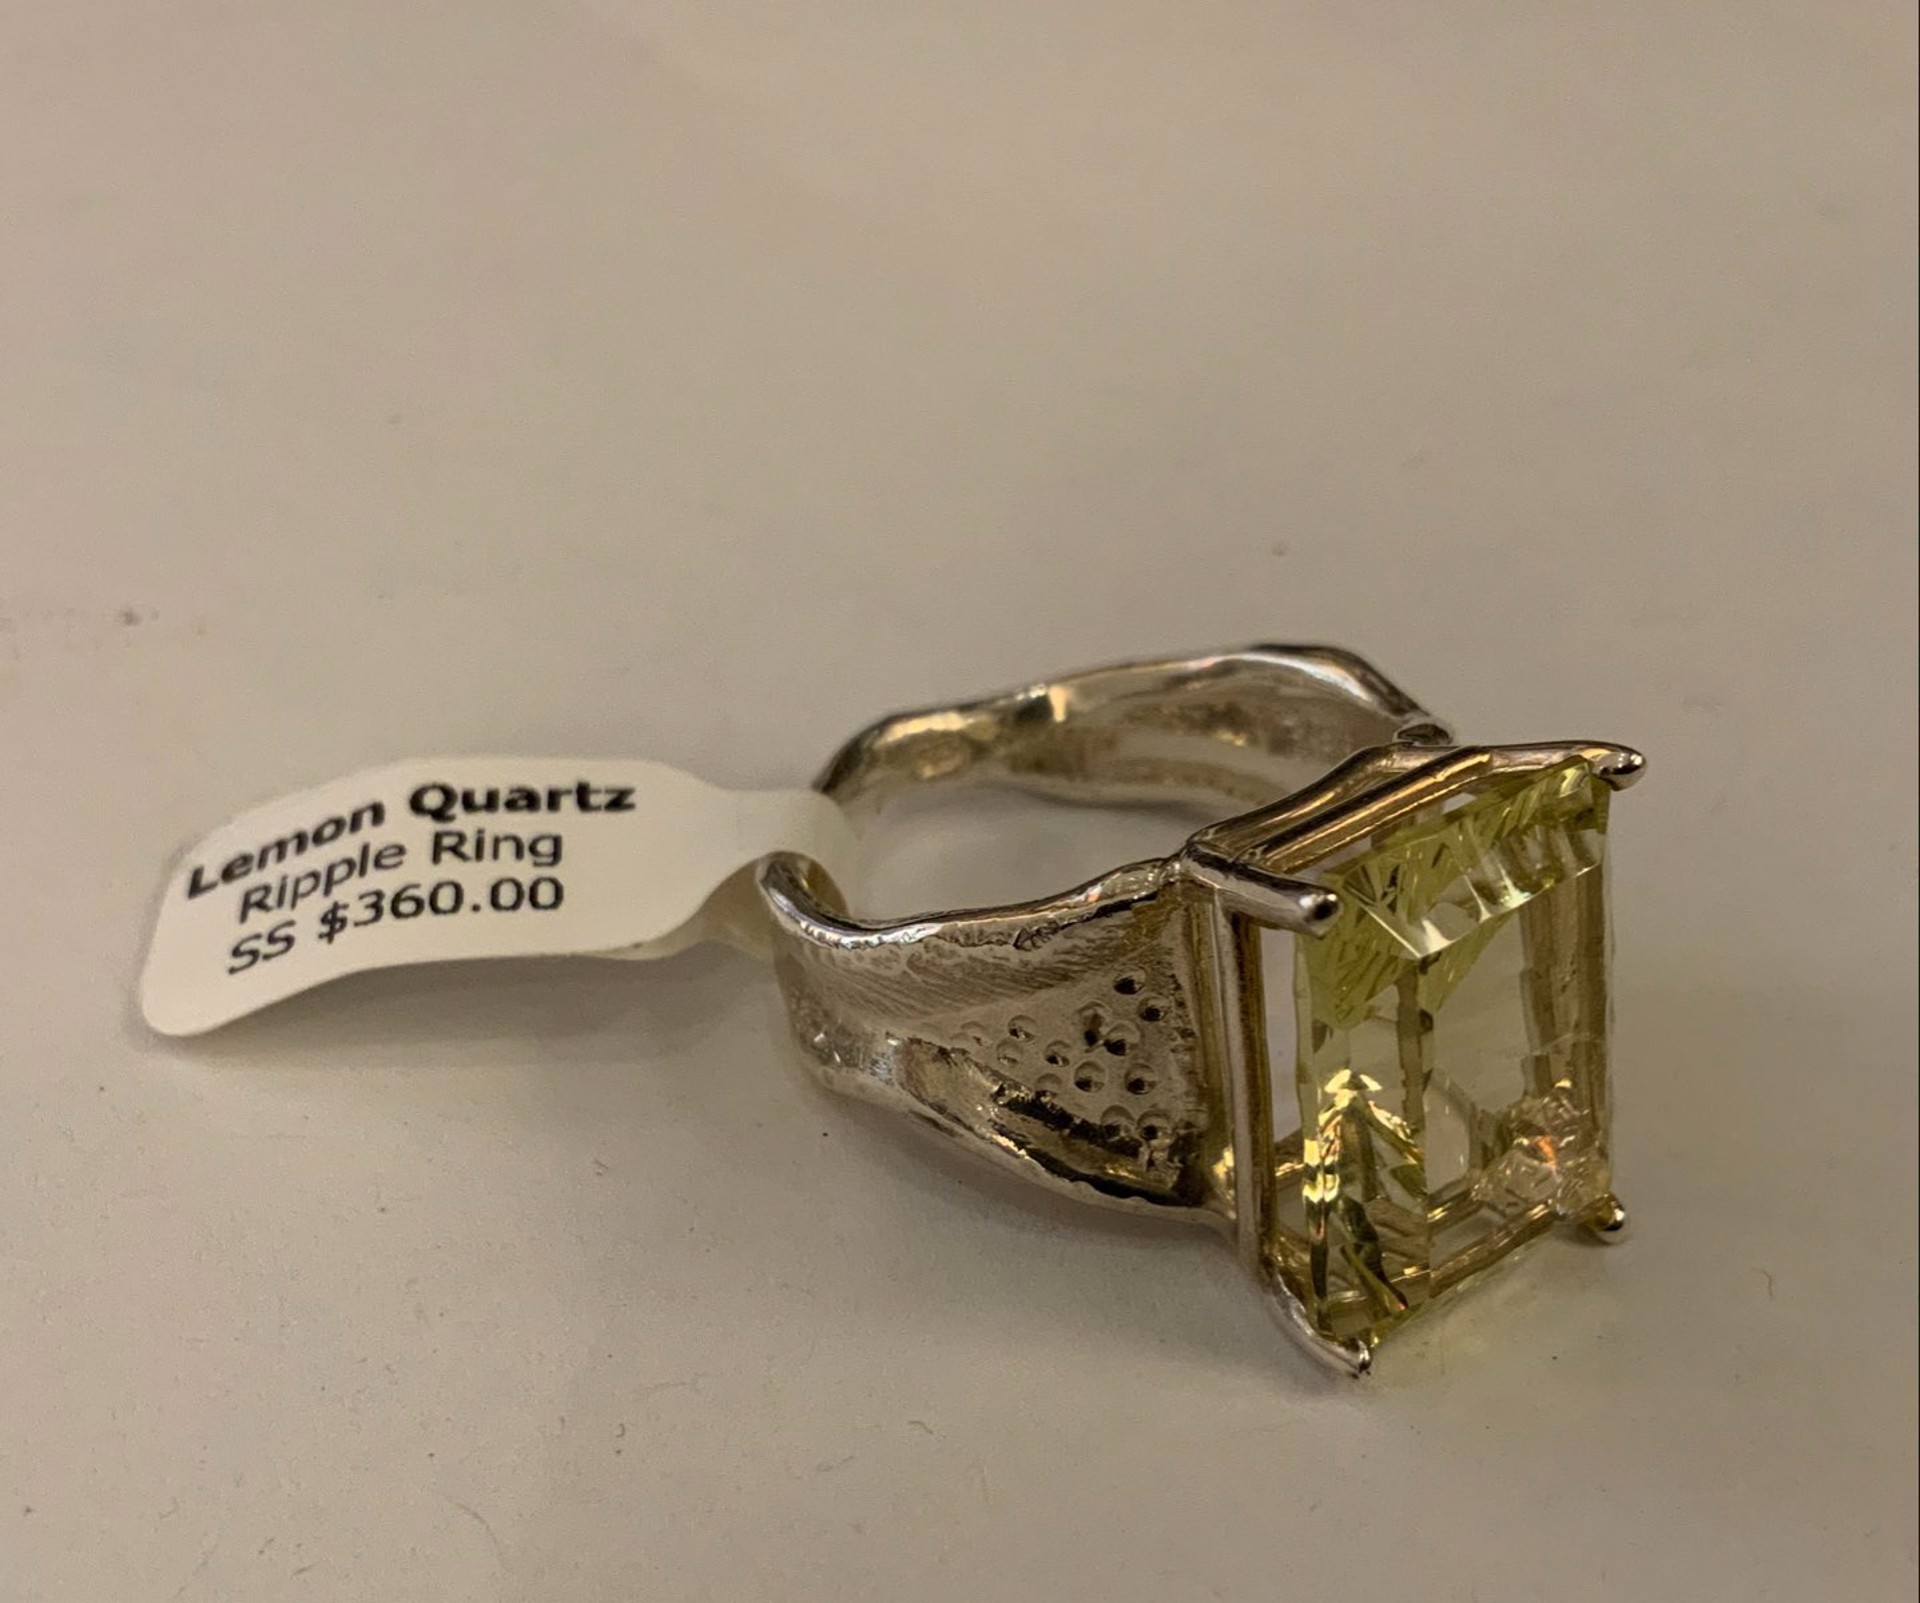 Lemon Quartz Sterling Silver Ripple Ring by Kristen Baird